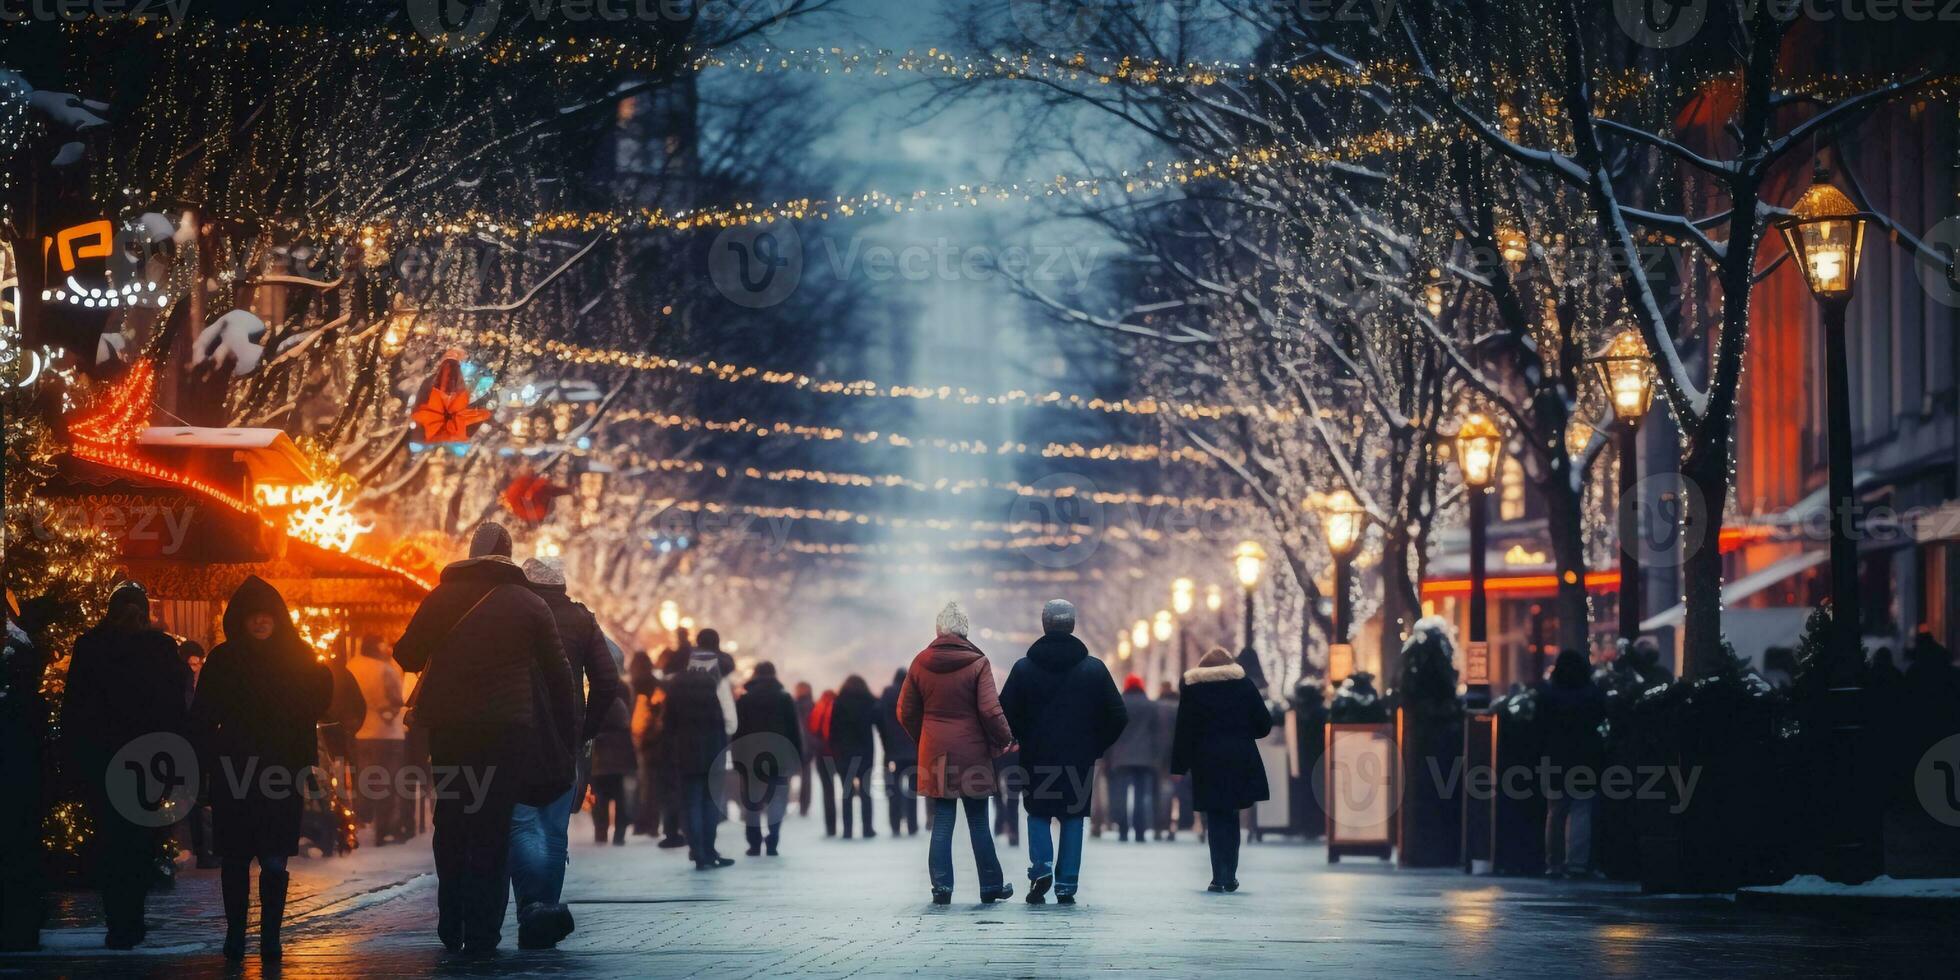 rörelse suddig gata se och rörelse suddig prople gående längs de gata i vinter- säsong, vinter jul marknadsföra foto